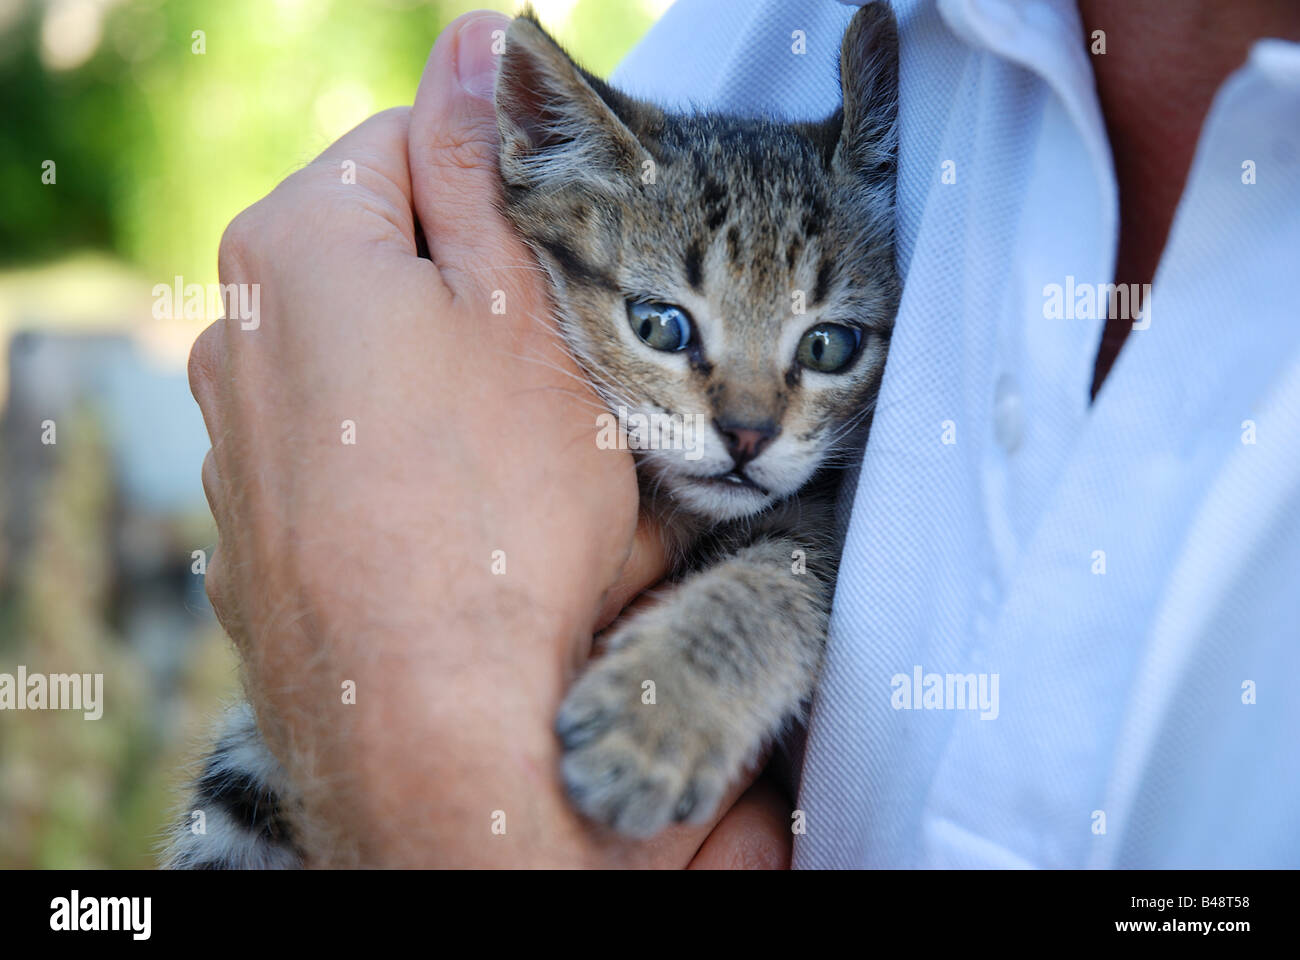 Piccola tabby cat in mano d'uomo cercando di paura. Foto Stock